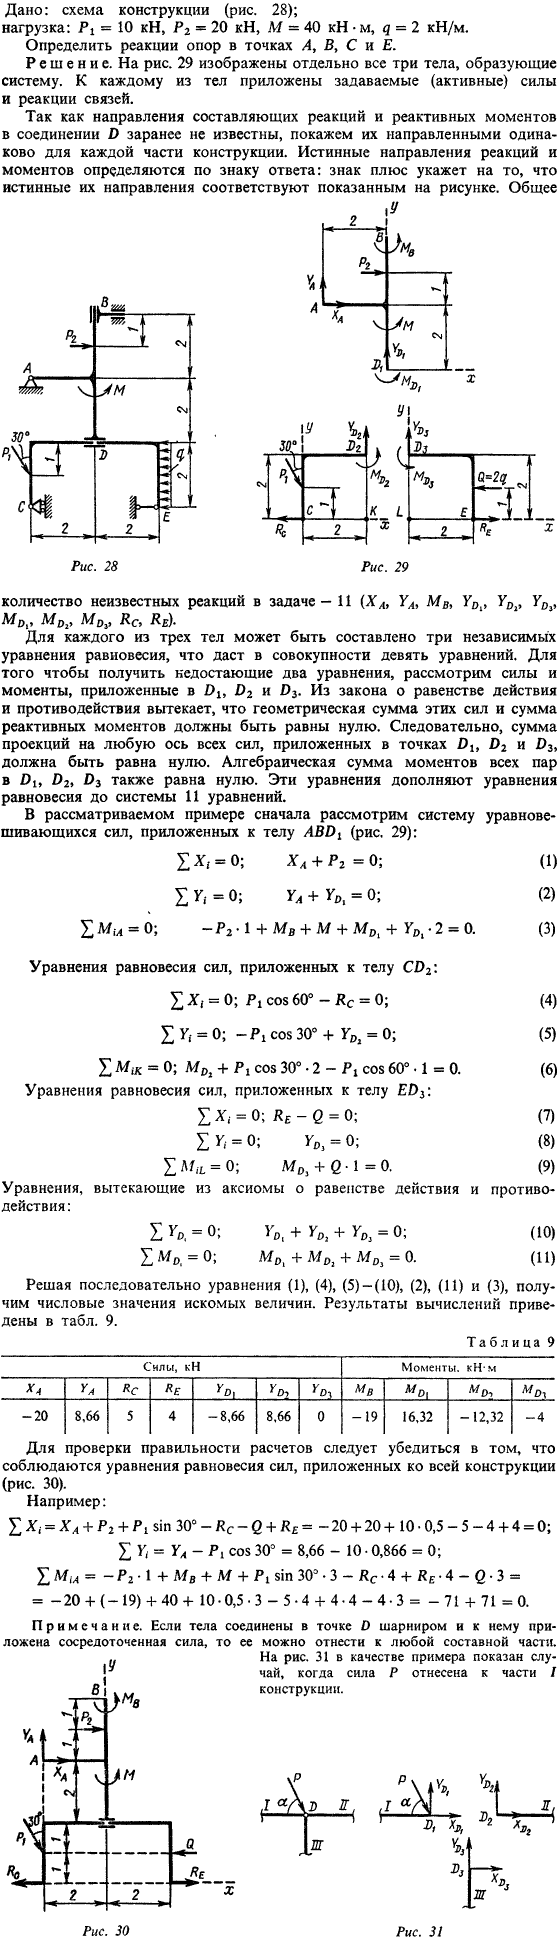 С4 пример 1. Дано: схема конструкции рис. 28 ; нагрузка: P1=10 кН, P2=20 кН, M=40 кН · м, q=2 кН/м. Определить реакции опор в точках A, B, C